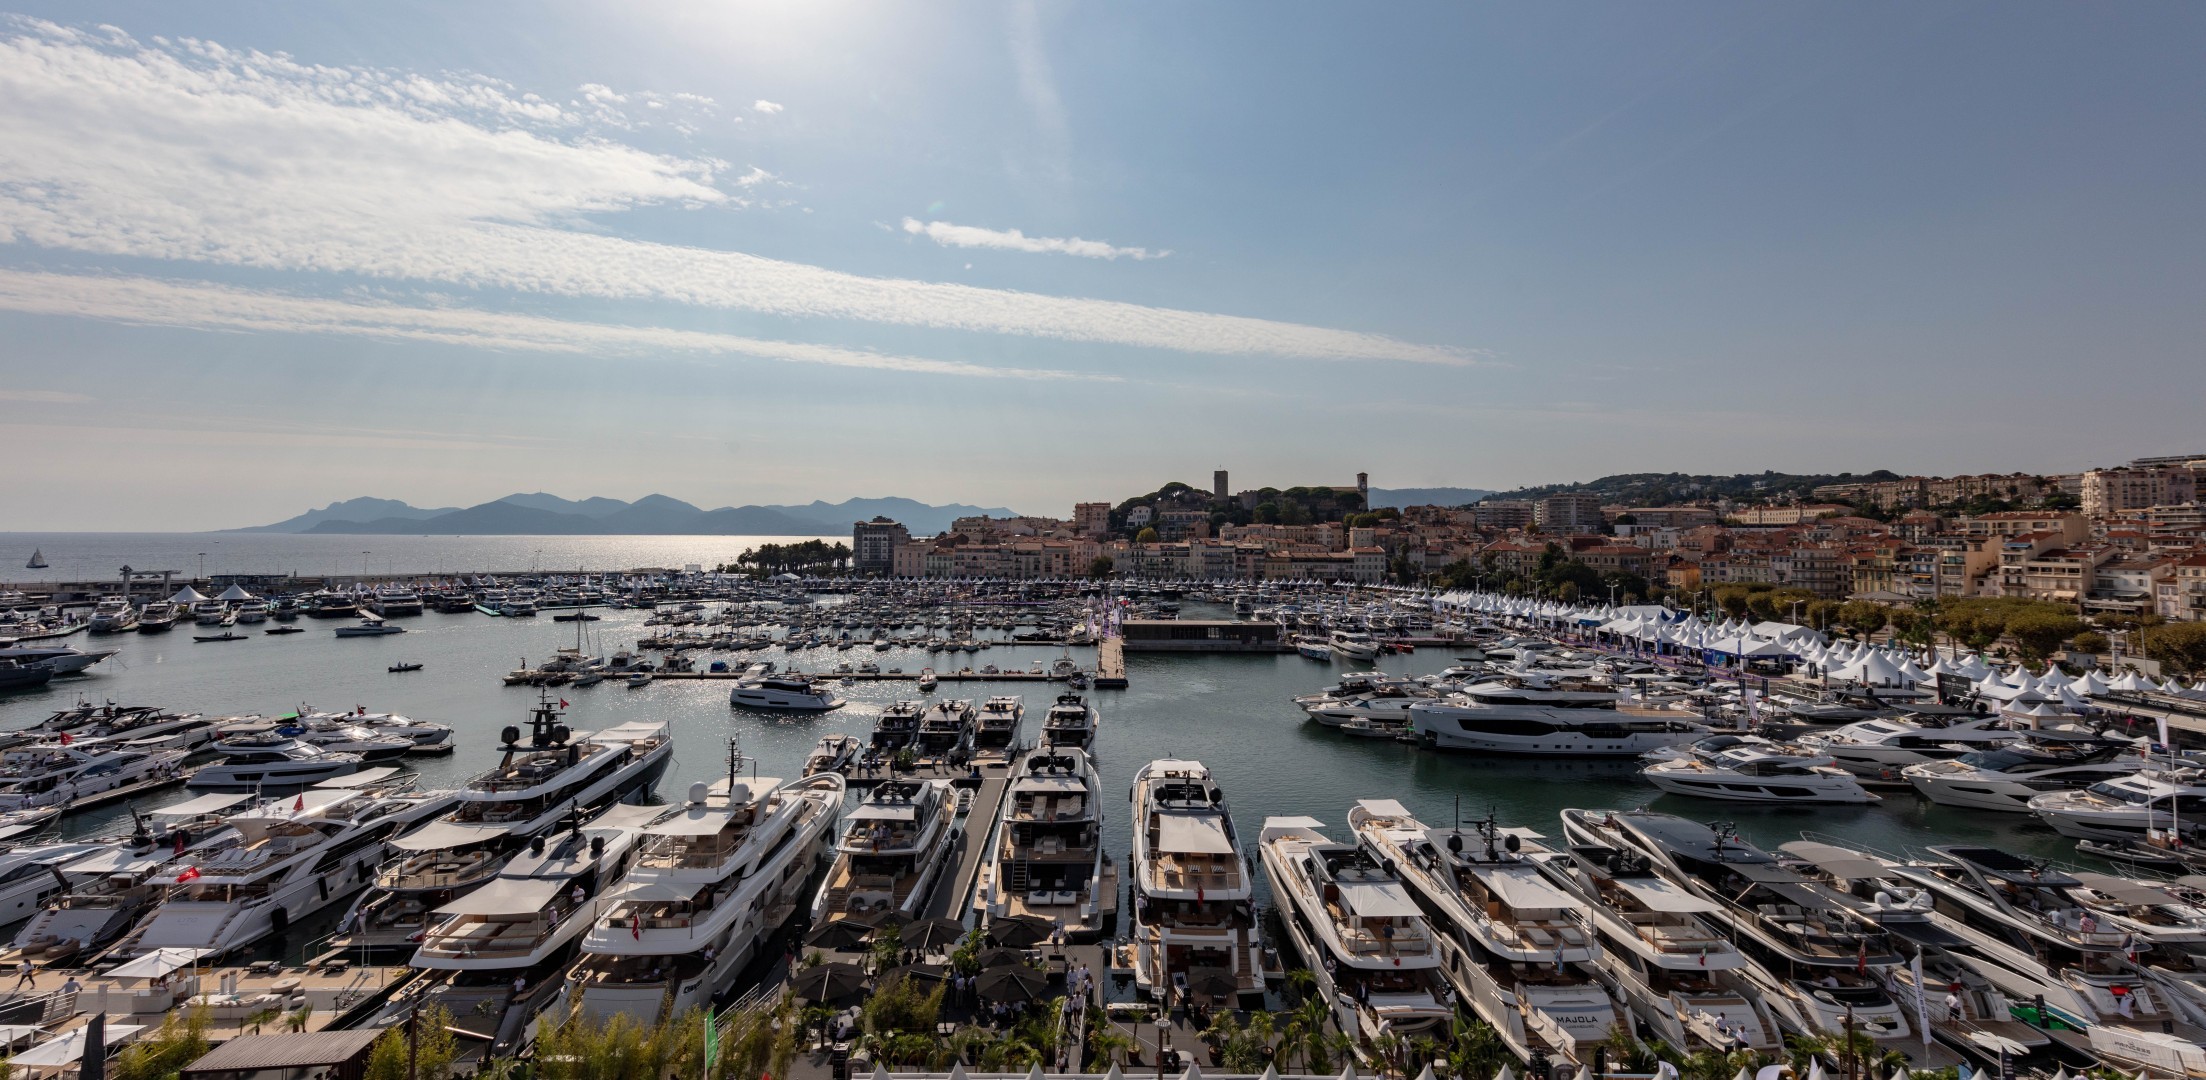 CMC Marine partecipa al Cannes Yachting Festival in grande stile